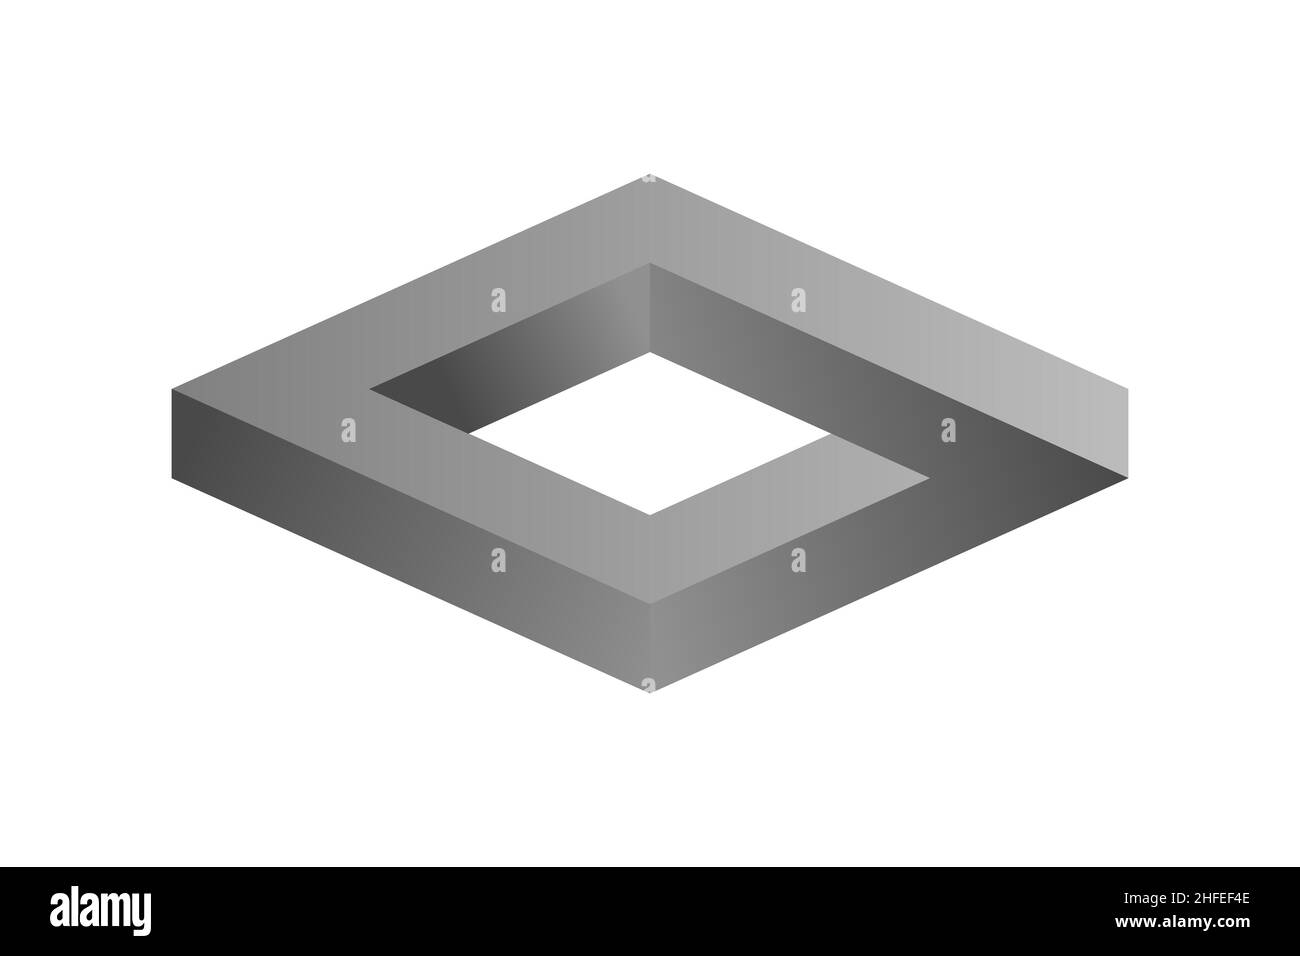 Impossibile rettangolo senza fine in argento. Forma della scatola impossibile. Illusione ottica. Cifra rhombus infinita gradiente grigio. Astratto oggetto geometrico eterno. Illustrazione Vettoriale